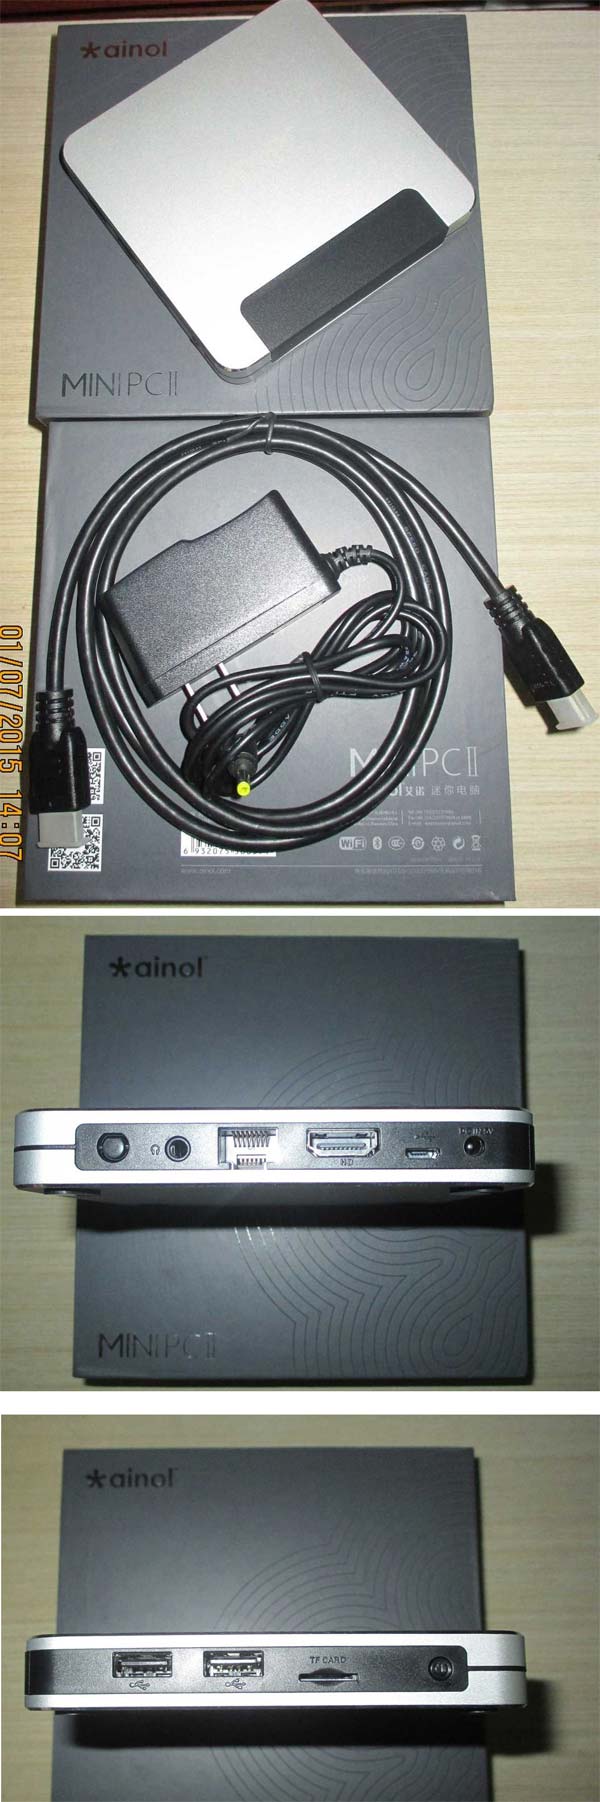 На фото устройство Mini PC II от Ainol